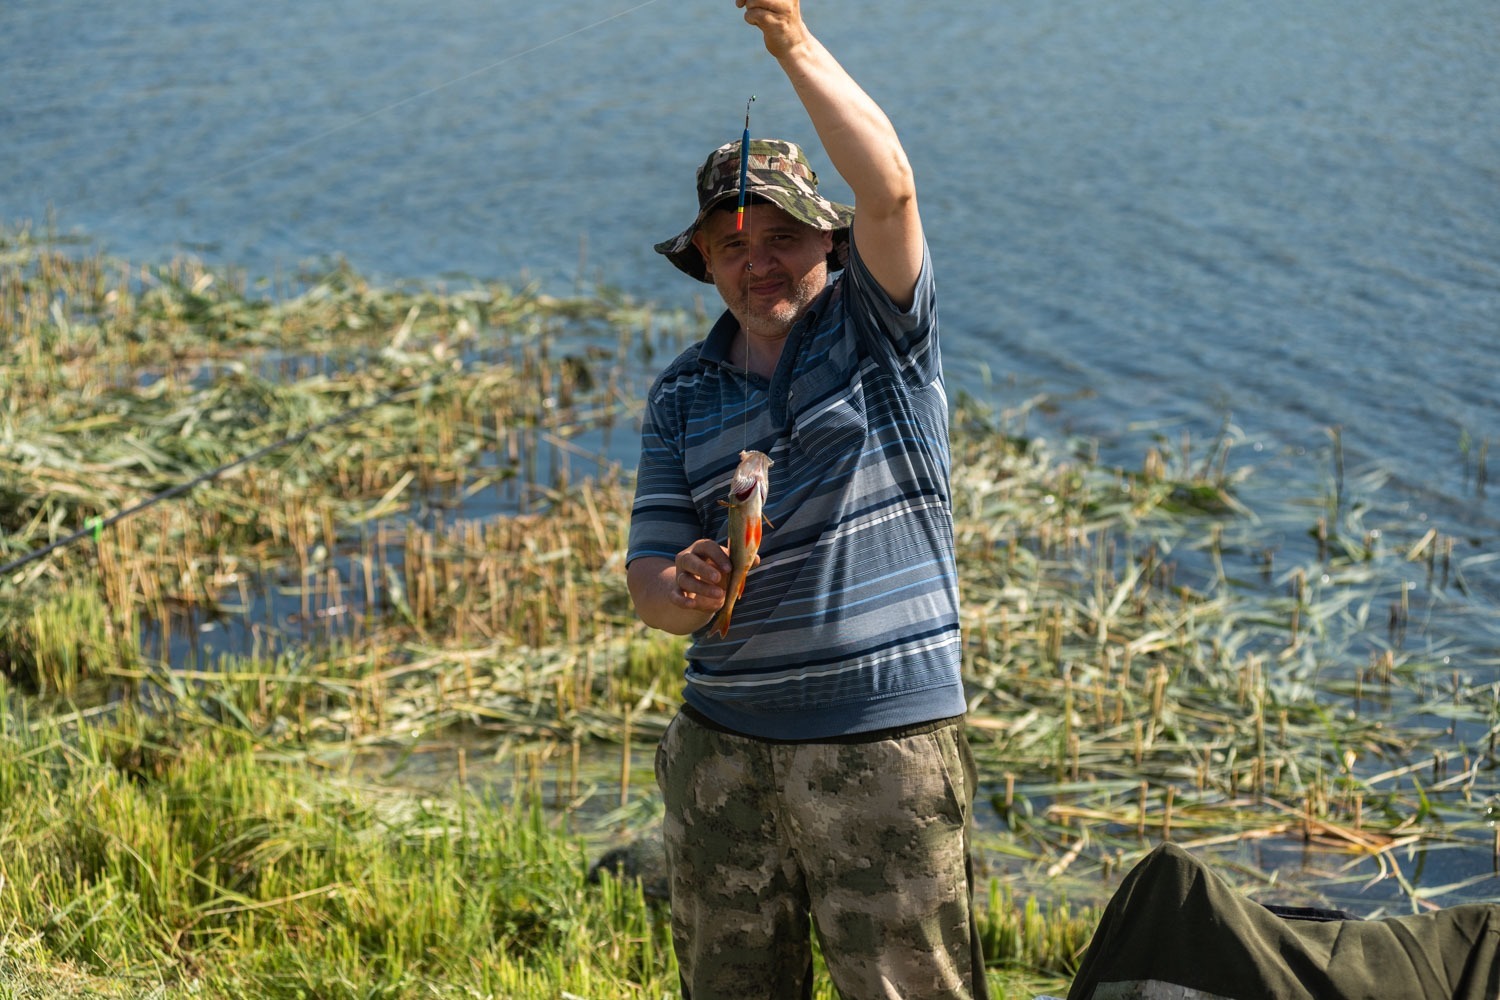 Правила рыболовства в нижегородской области